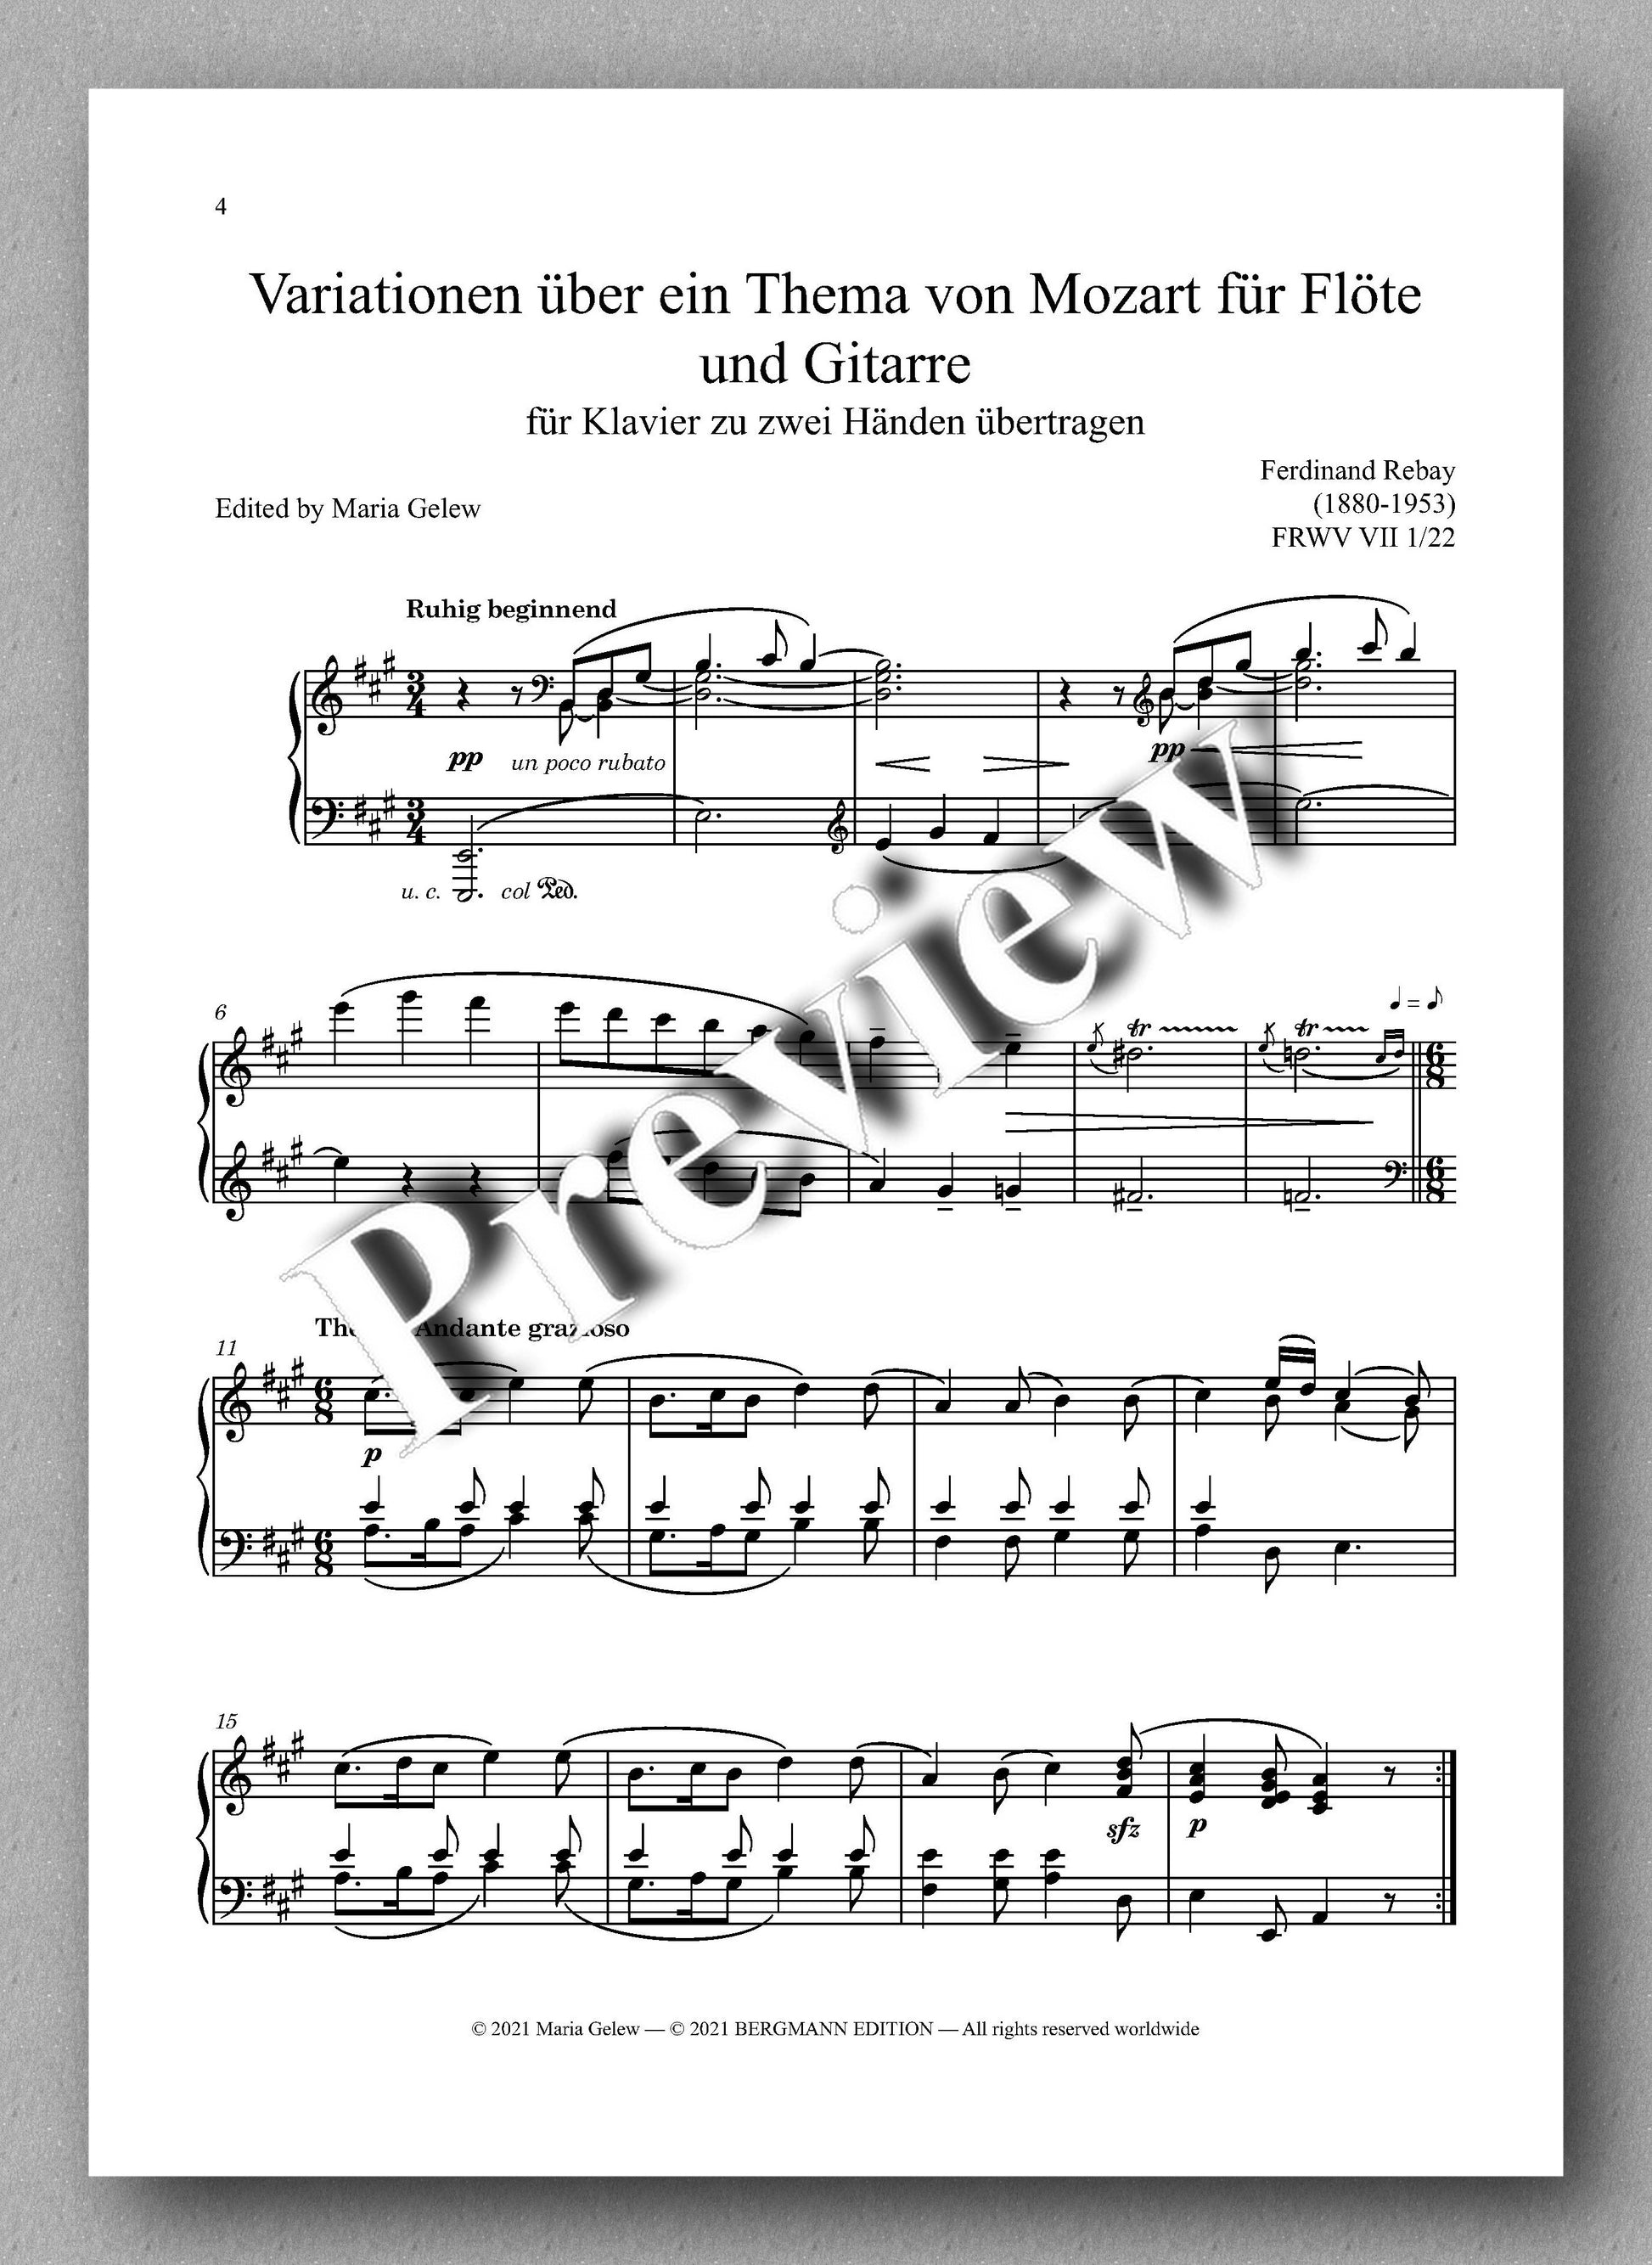 Rebay, Klavier No. 14, Variationen über ein Thema von Mozart für Flöte und Gitarre - music score 1